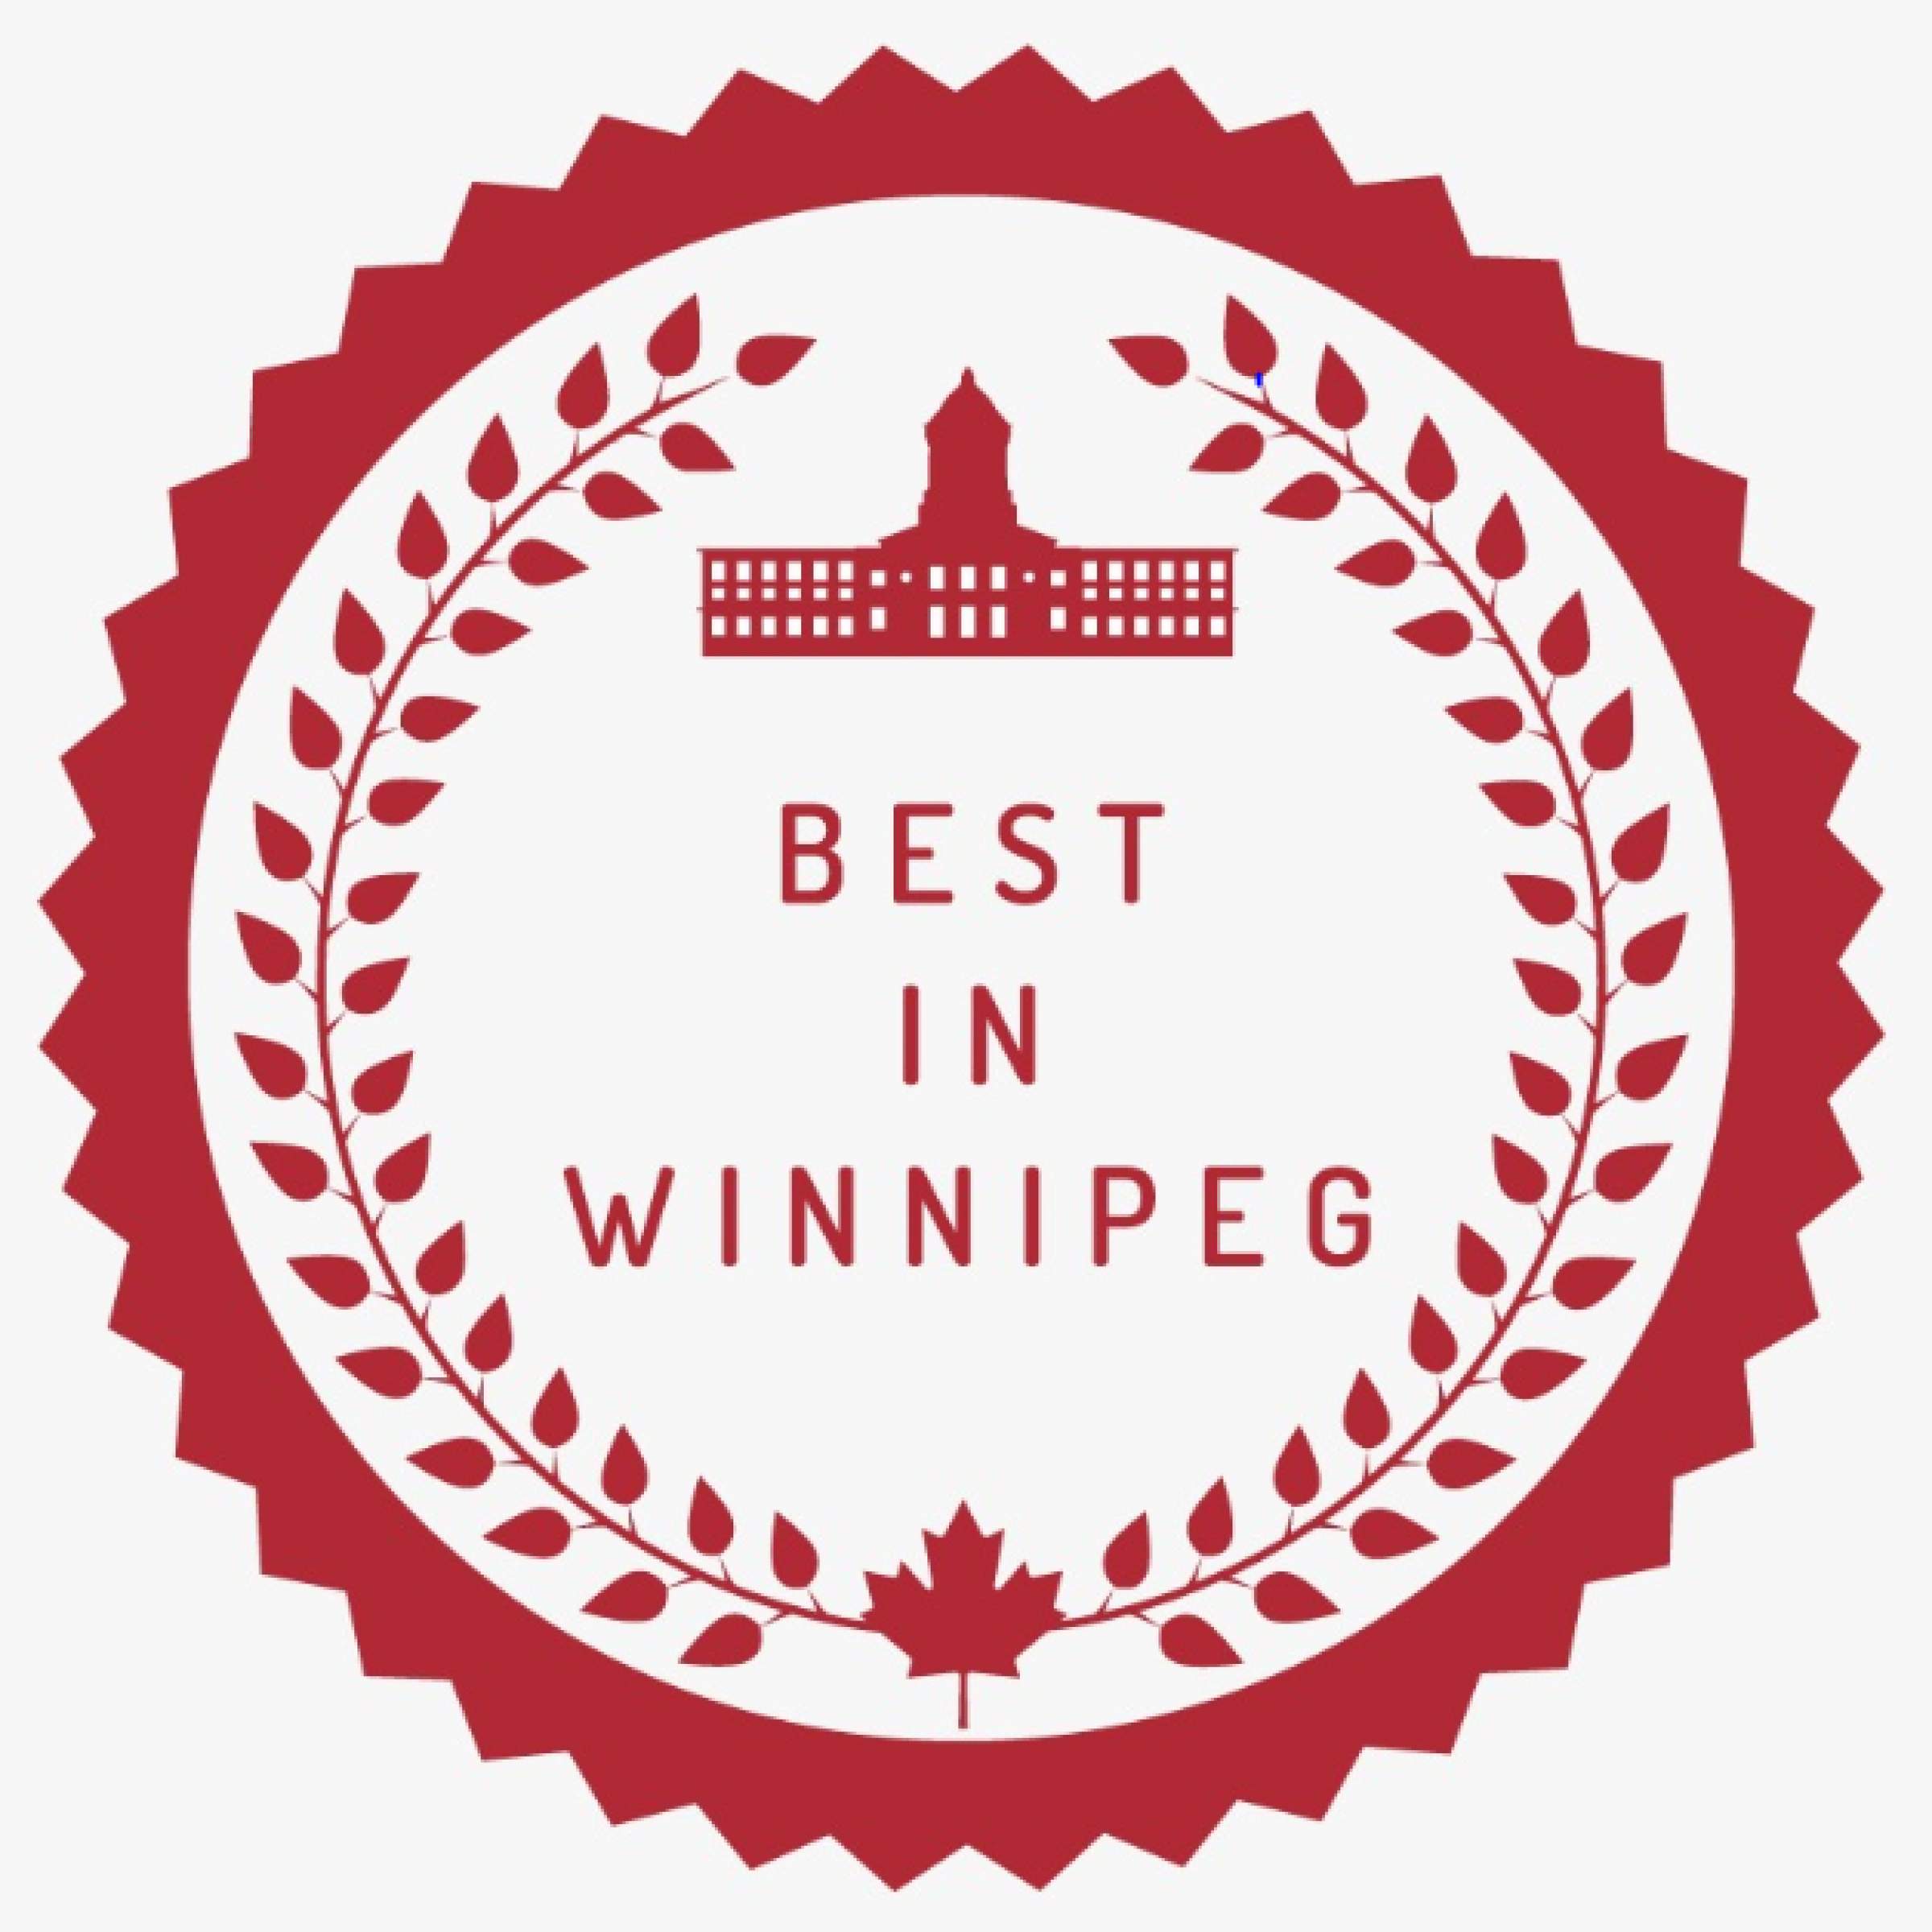 Voted top 7 Caterer in Winnipeg by "Best In Winnipeg" 2021